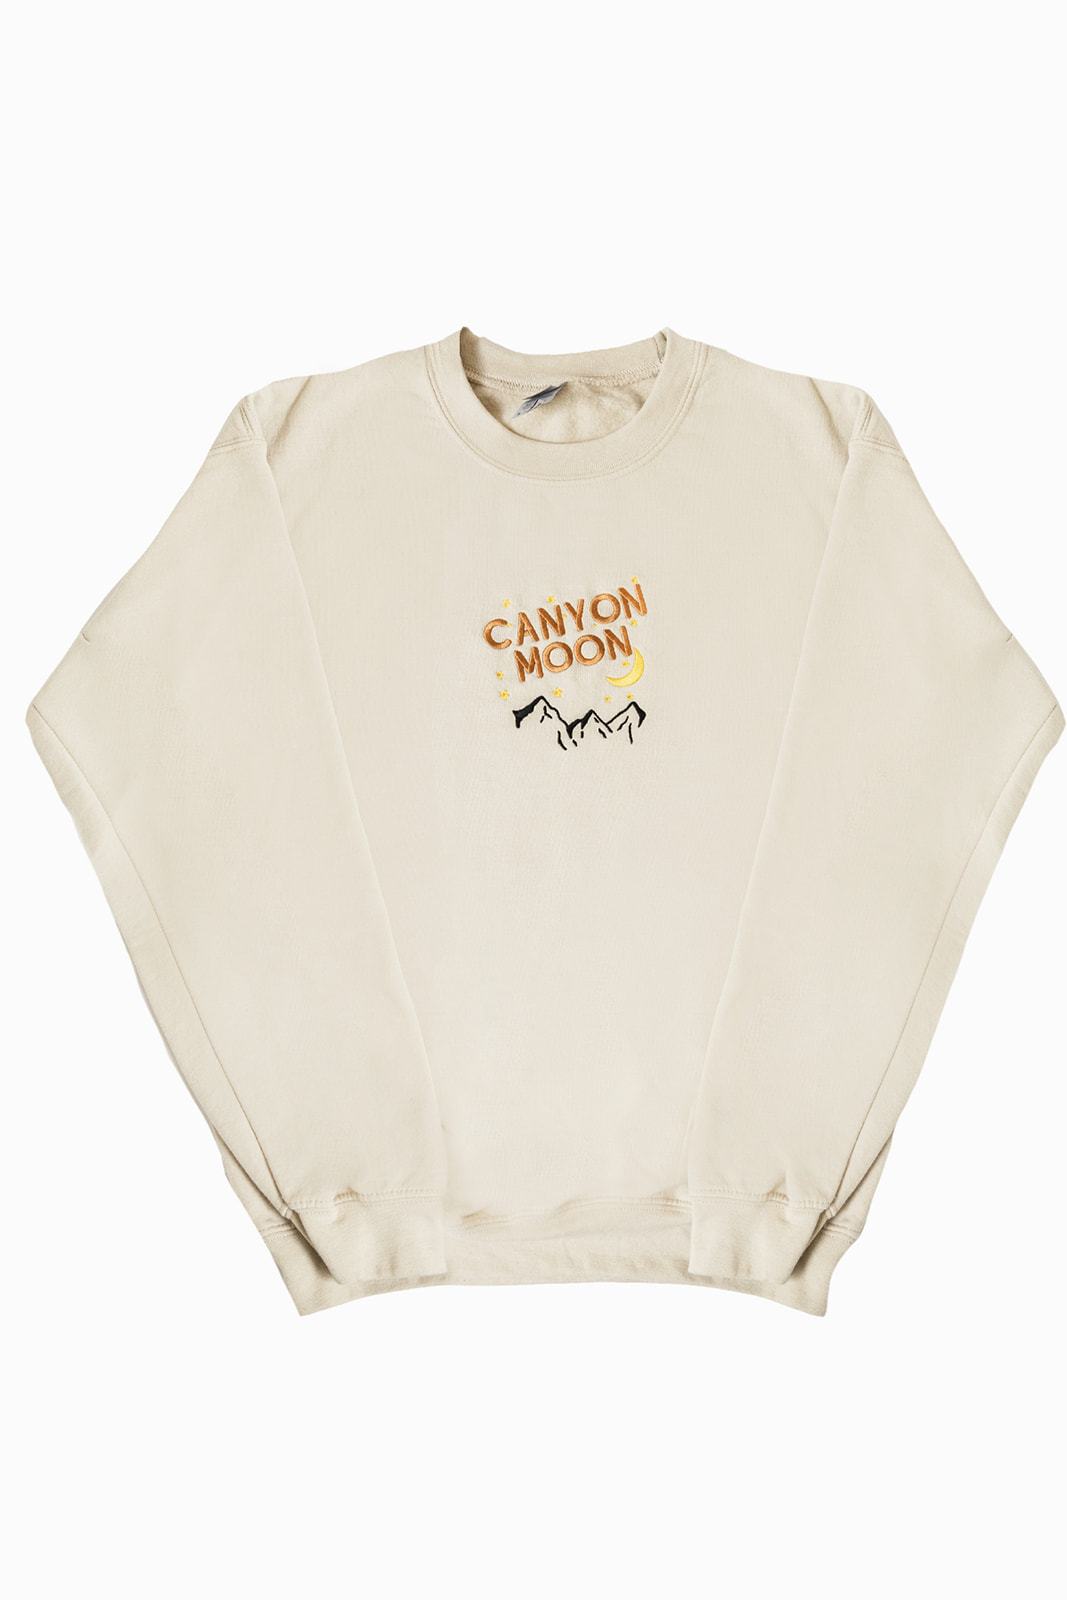 Canyon Moon Sweatshirt - Emacity Threads